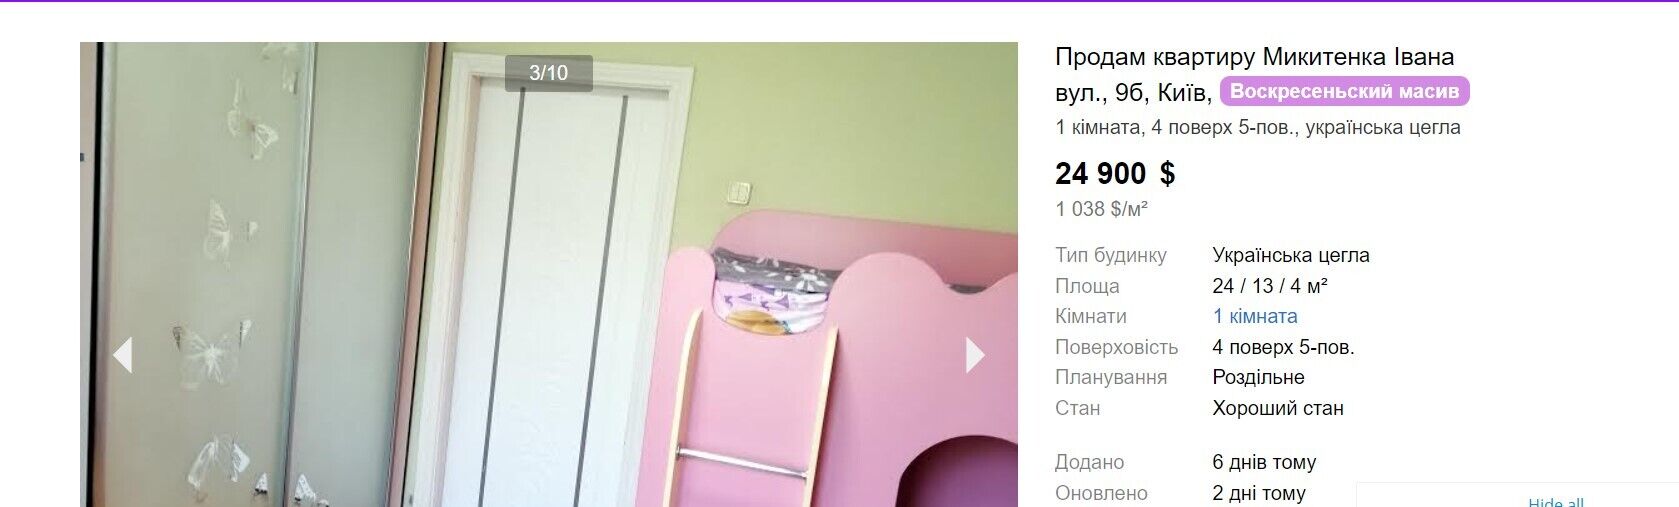 Какую квартиру в Киеве можно купить за $20 тысяч: лучшие варианты и особенности бюджетного жилья